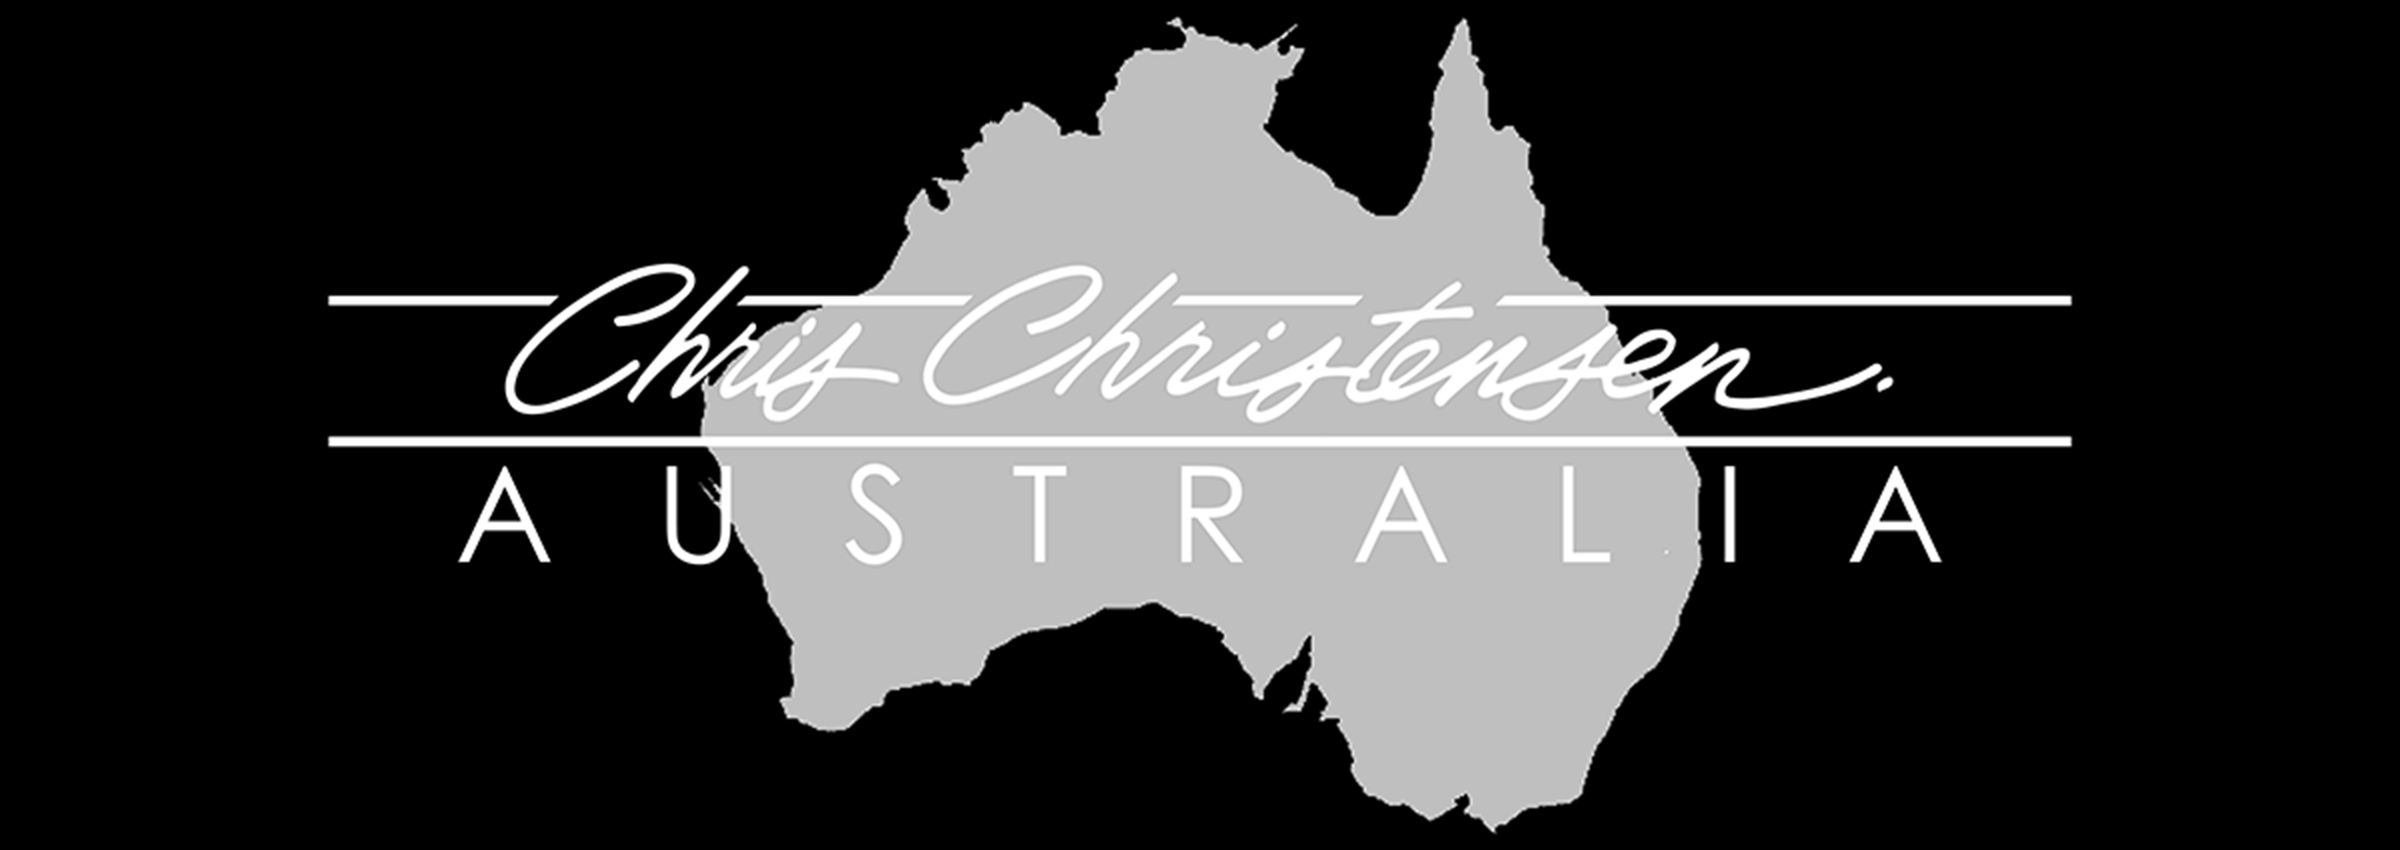 sponsor logo: Chris Christensen Australia